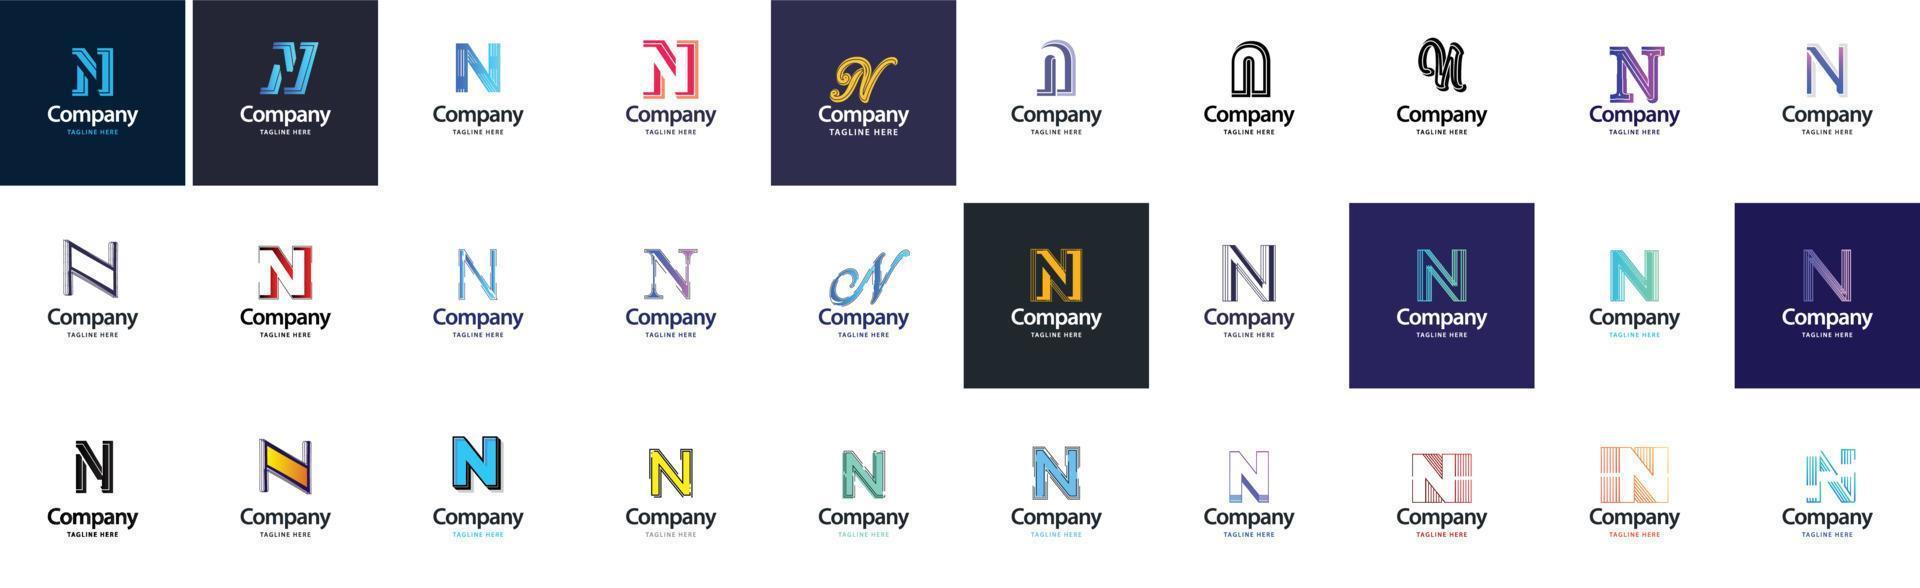 n logo collezione. 30 attività commerciale logo collezione per finanziario azienda o design agenzia. vettore marca illustrazione